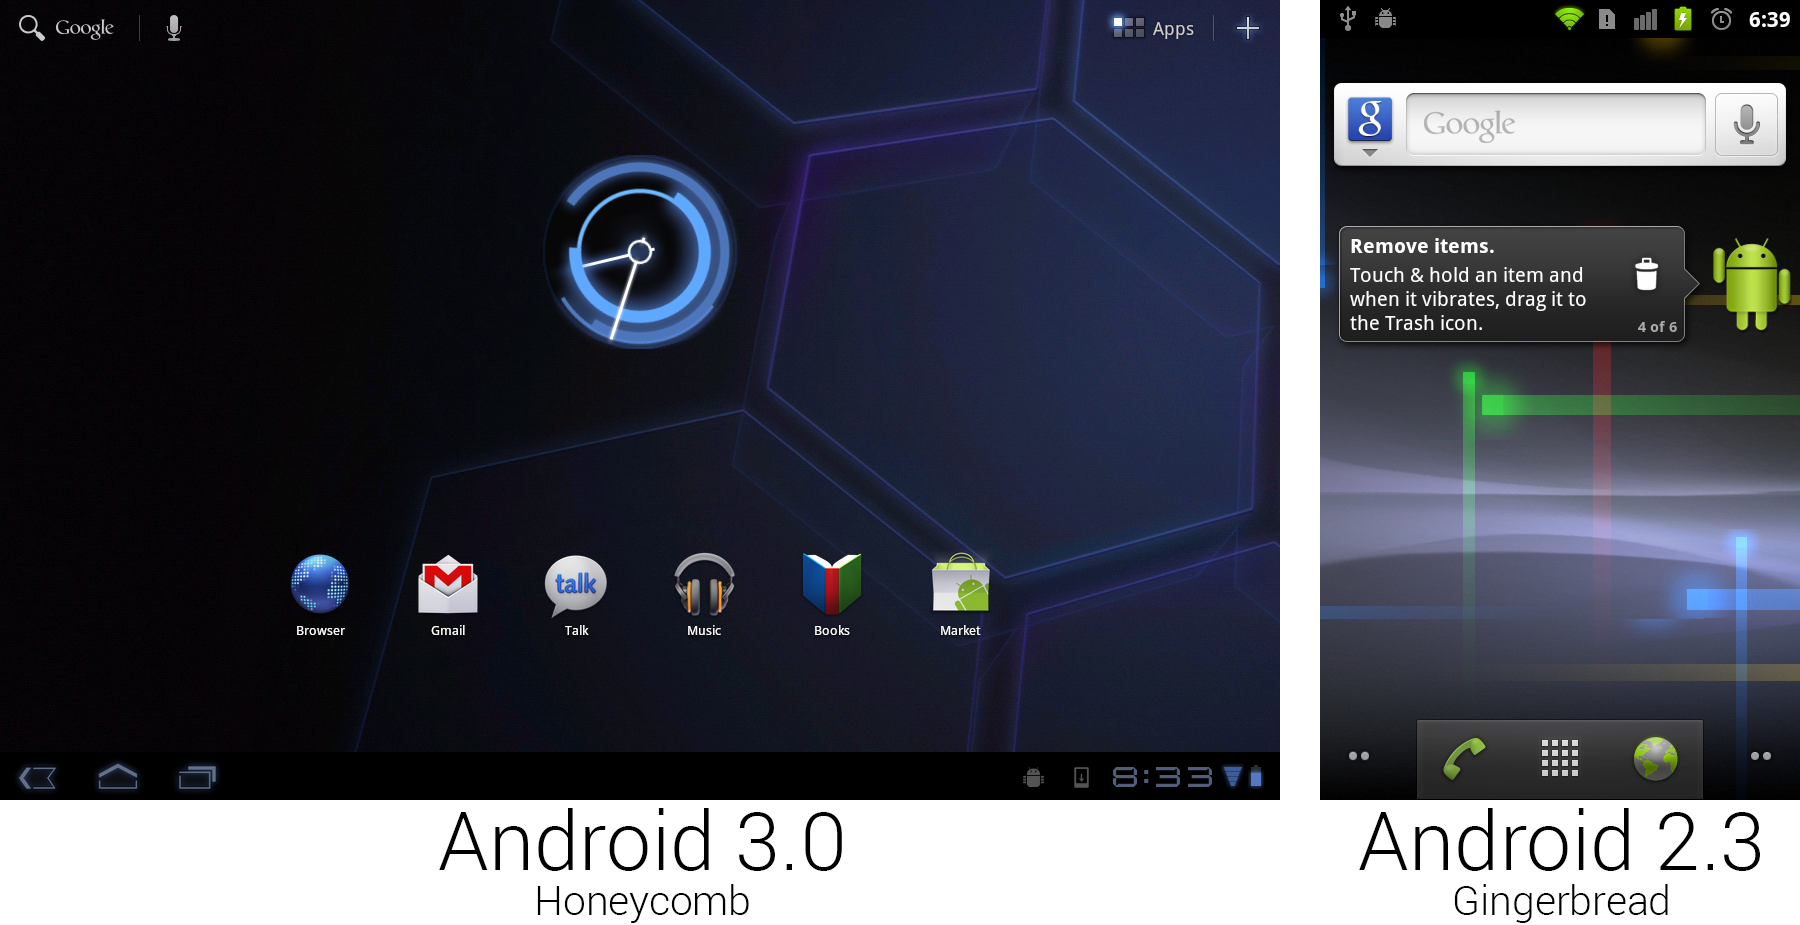 Android honeycomb. Android 3.0 / 3.1 / 3.2 Honeycomb. Android Honeycomb Интерфейс. Интерфейс андроид 3. Андроид 3.0.